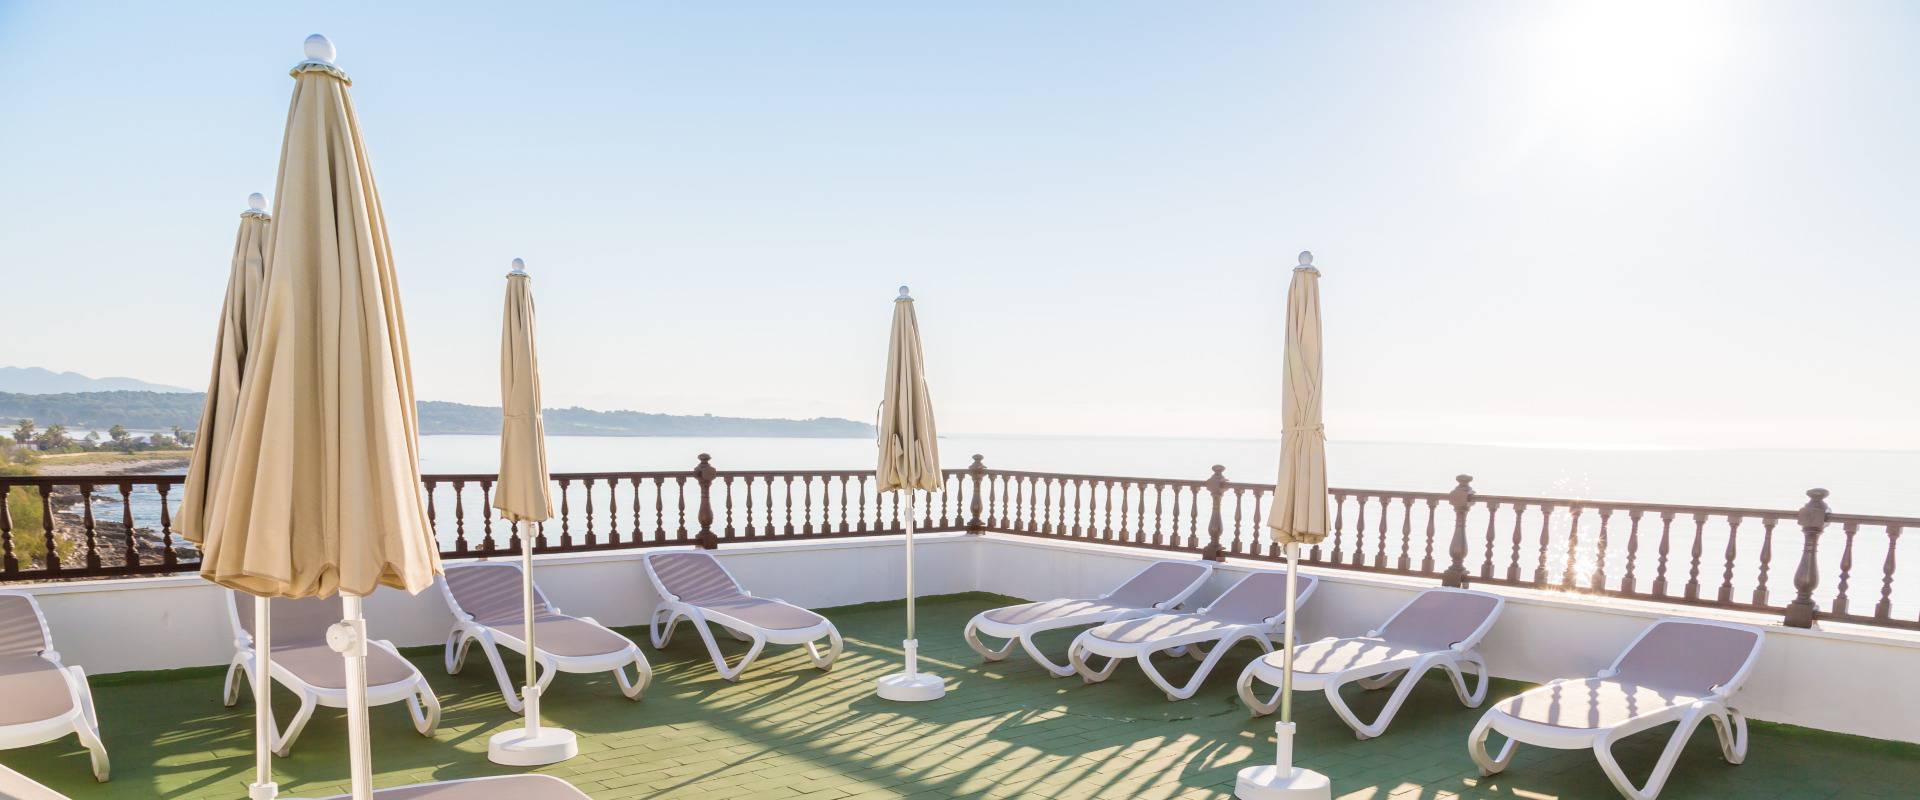 Bienestar para el cuerpo y la mente Hotel S'illot Mallorca